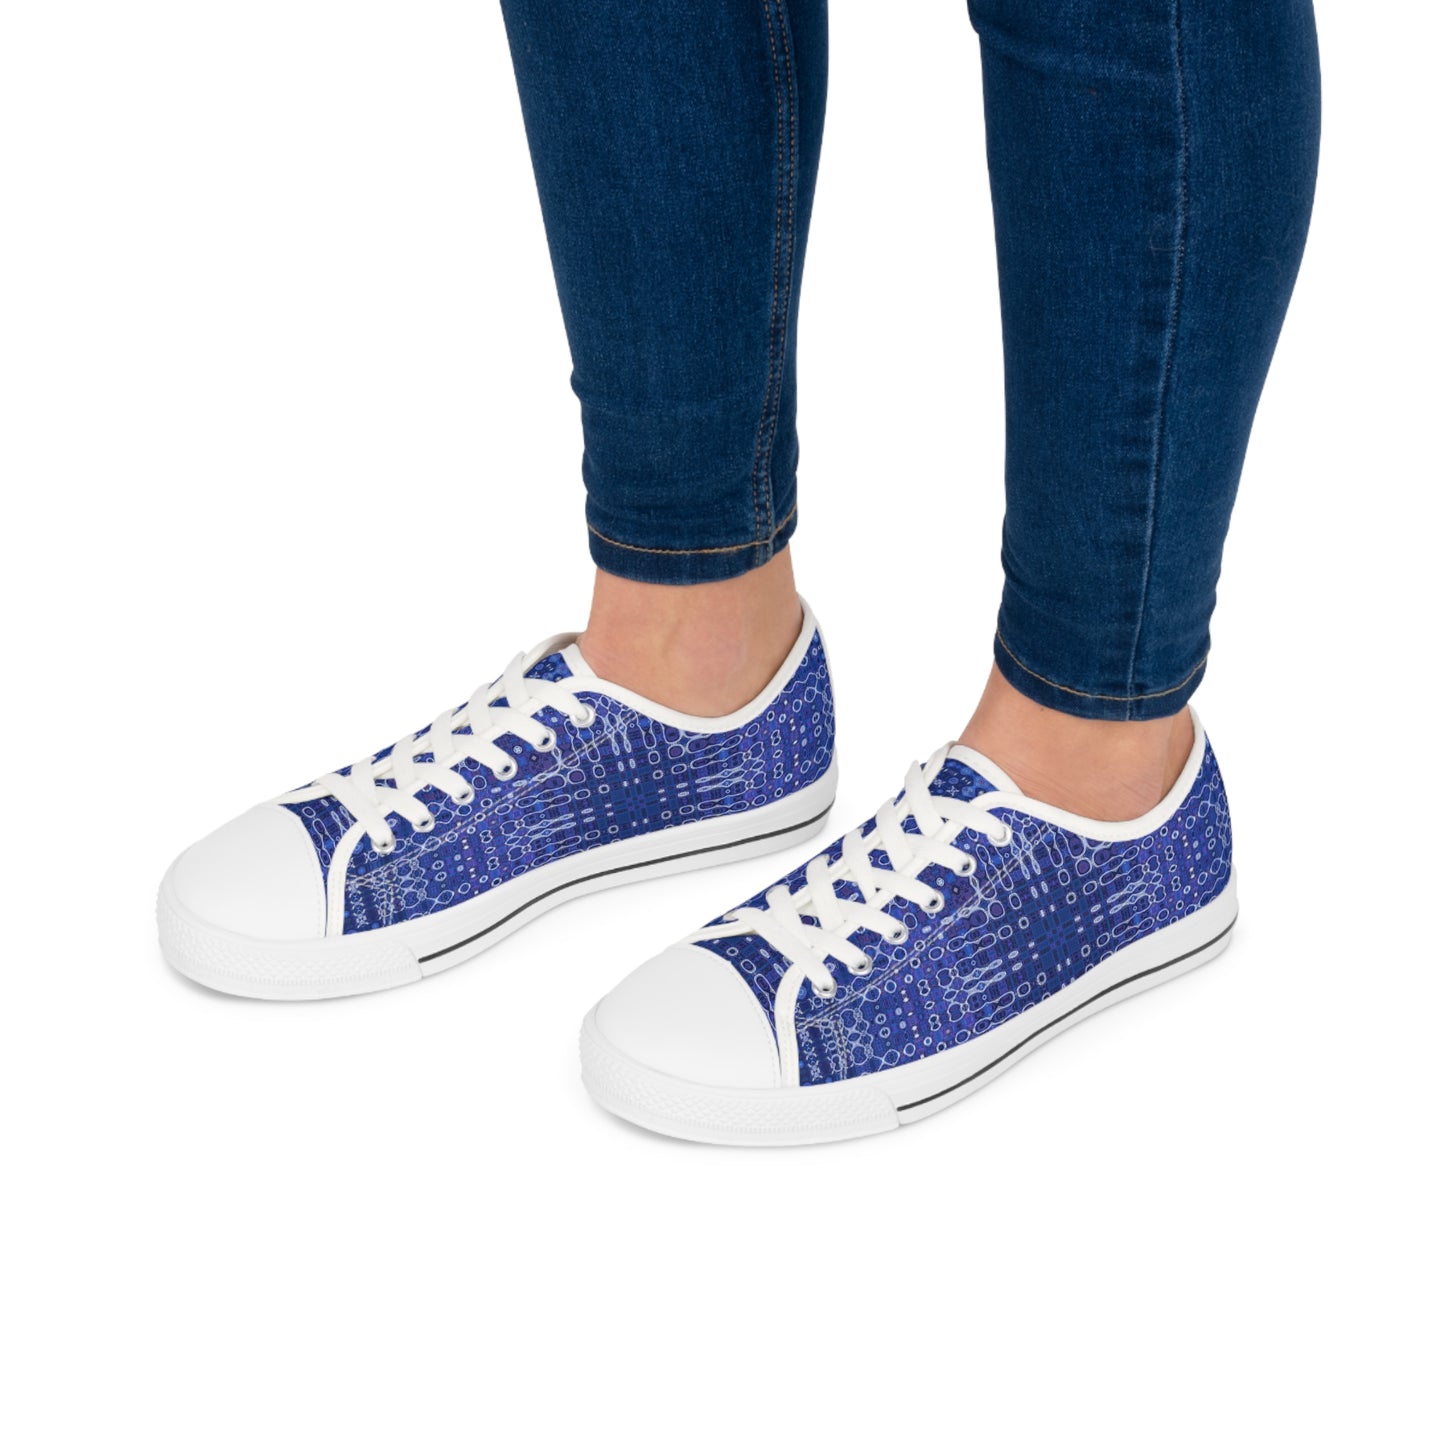 "Looped Circuits - Purple/Blue" JoySneaks Women's Low Top Sneakers